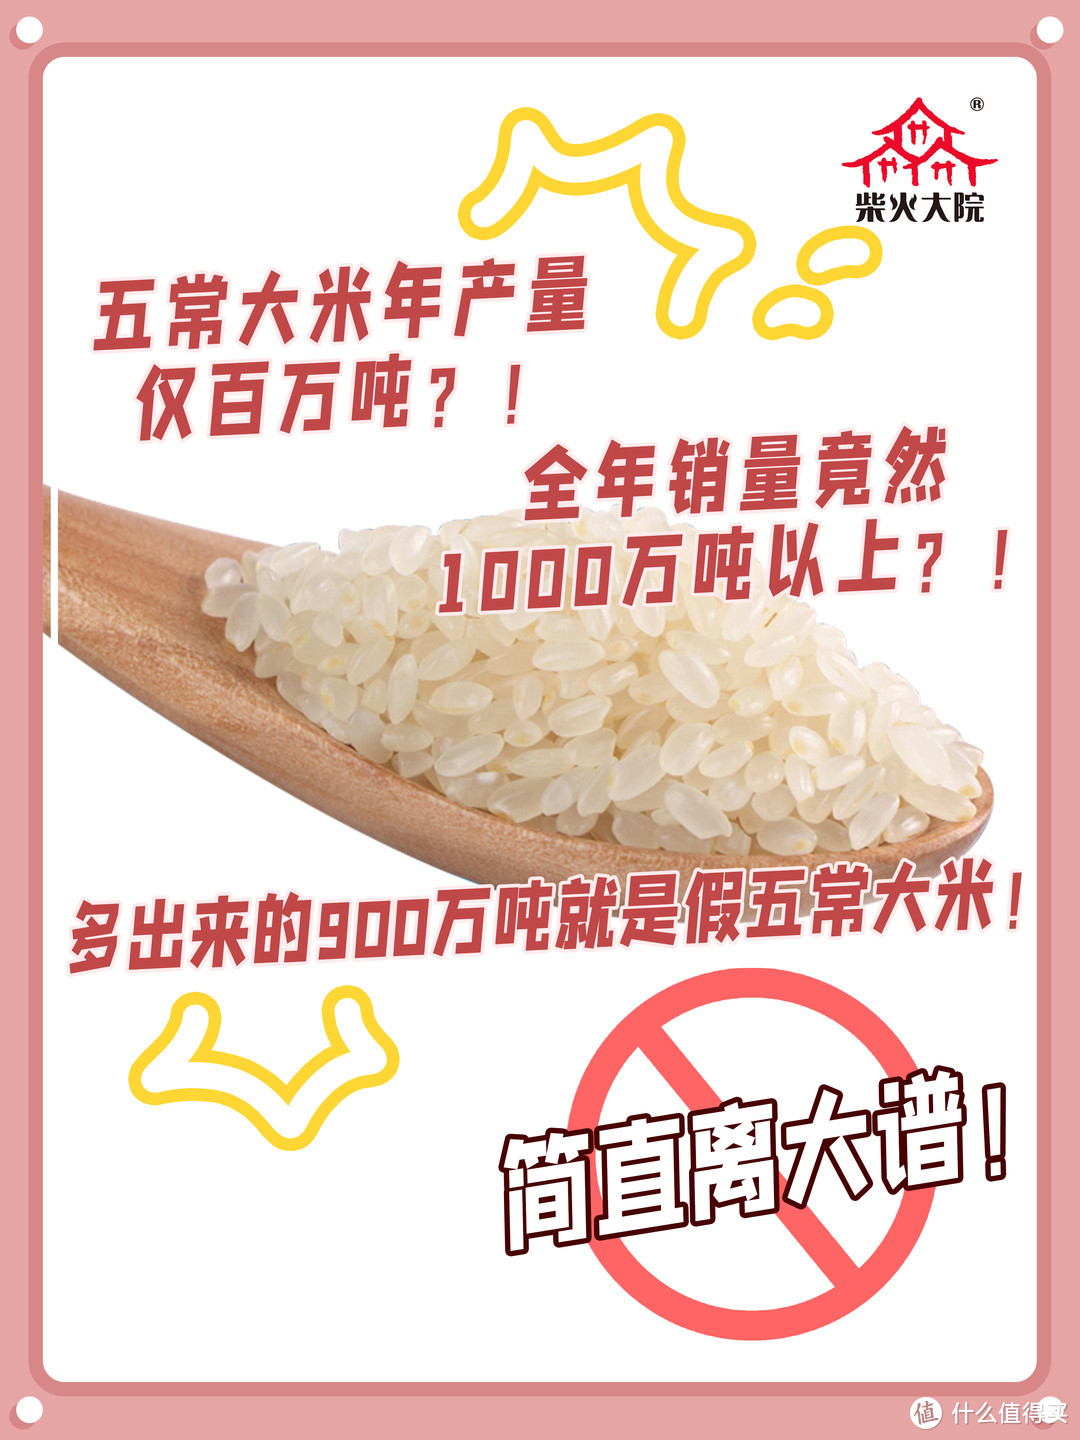 为啥五常大米有的贵有的便宜？